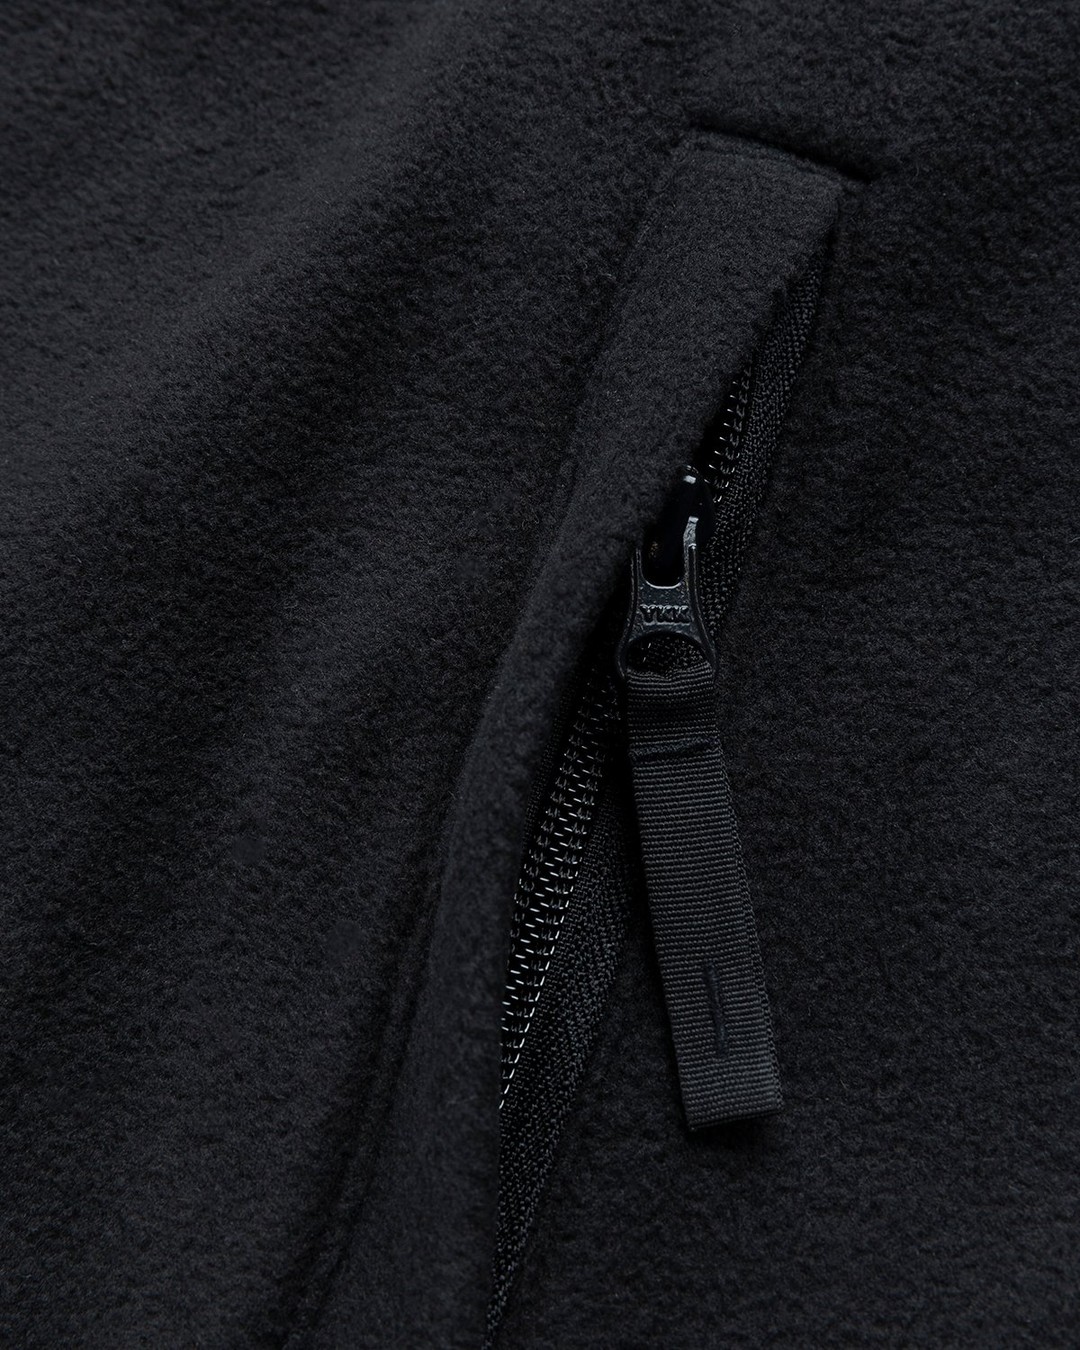 Carhartt WIP – Beaumont Jacket Black - Fleece - Black - Image 6